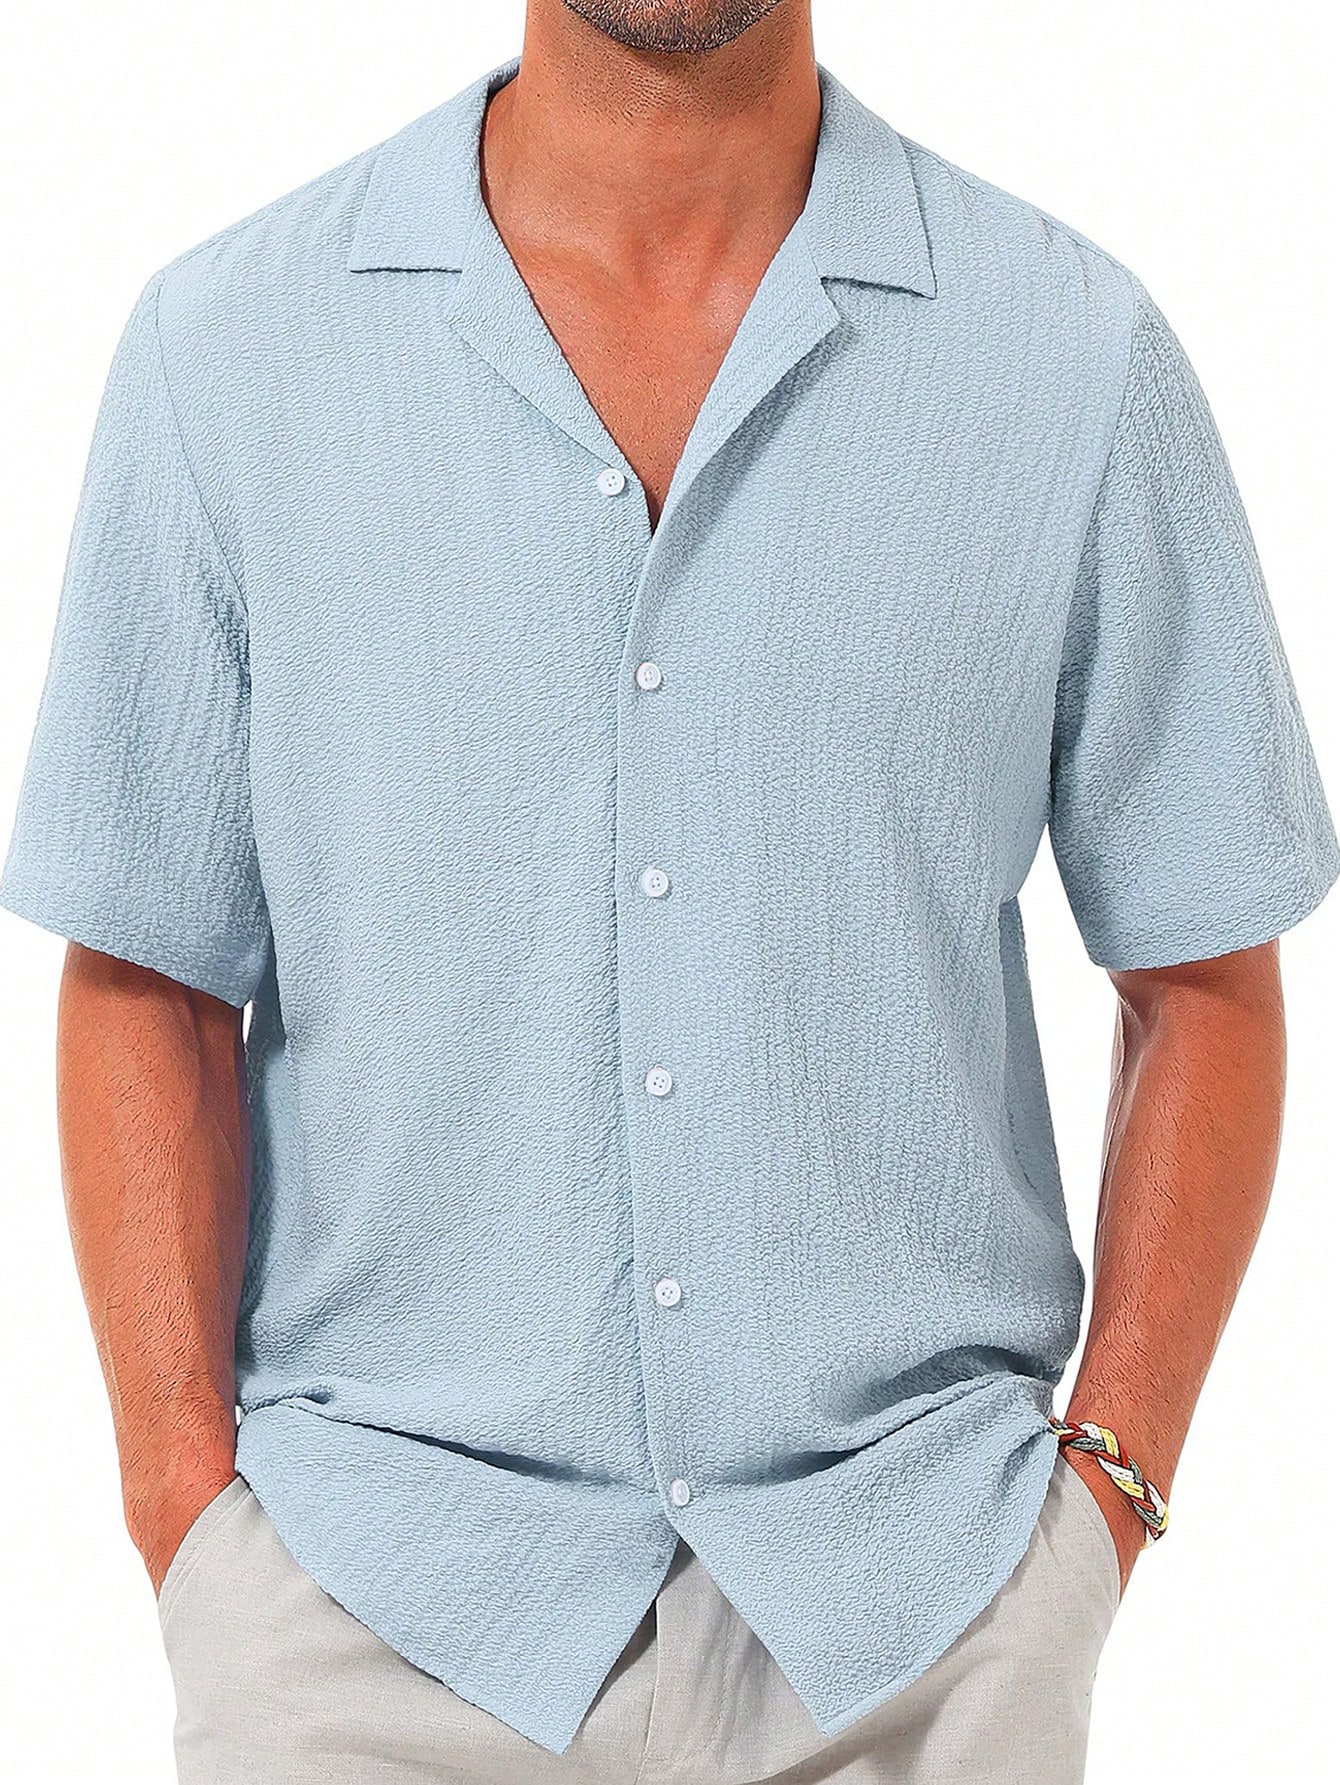 цена Мужская повседневная рубашка с коротким рукавом на пуговицах, синий